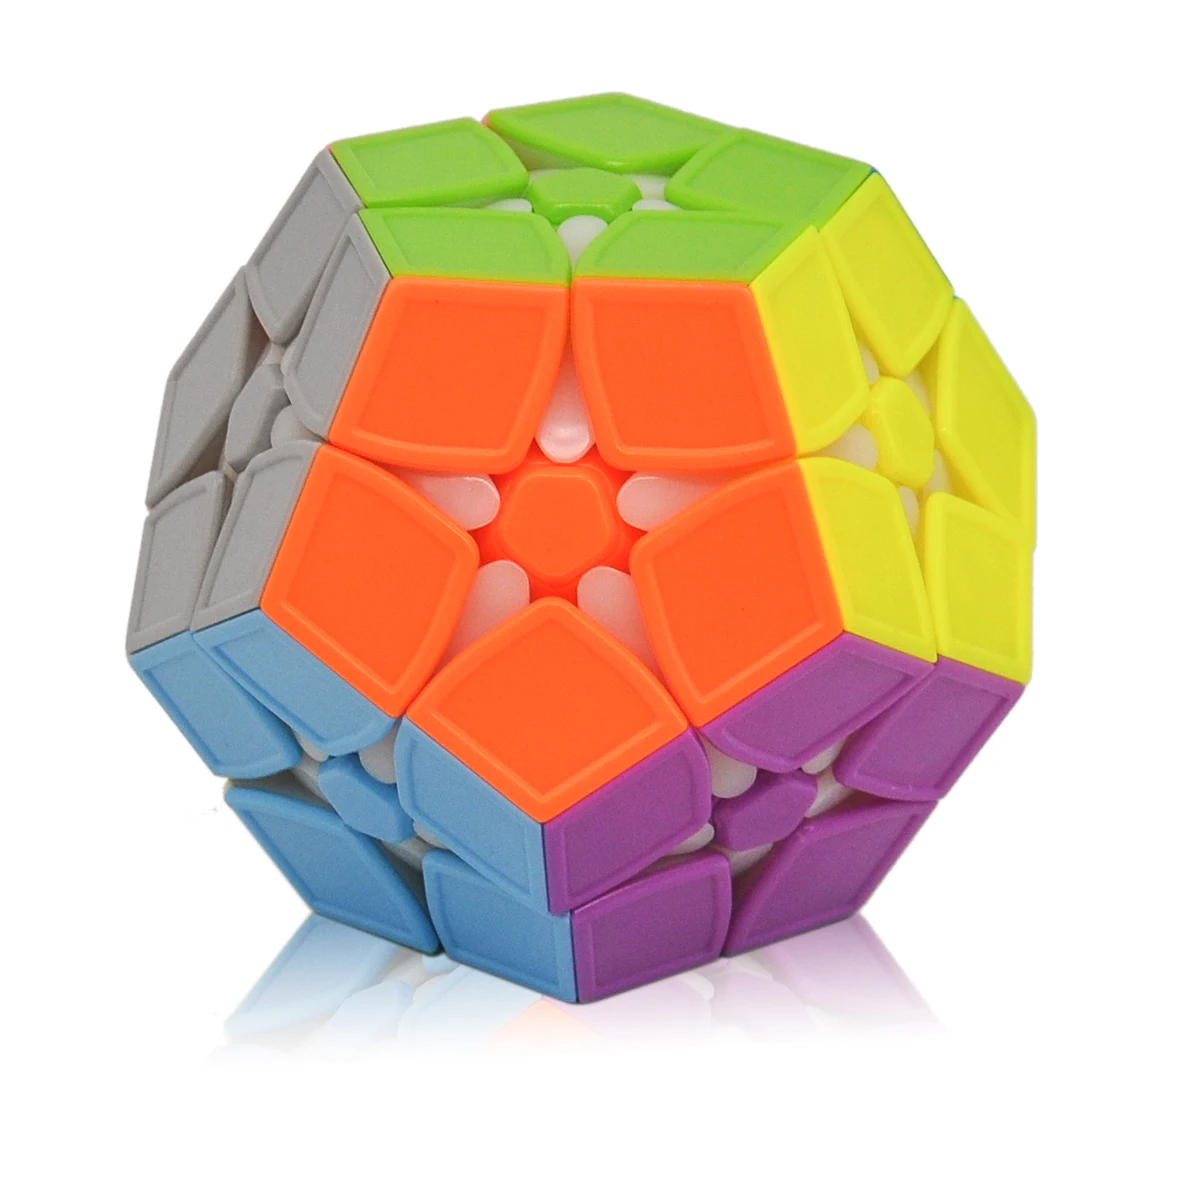 2rd заказ магический куб-мегаминкс без наклеек Додекаэдр скоростные кубики головоломка Твист Головоломка Cubo Magico игрушки для детей